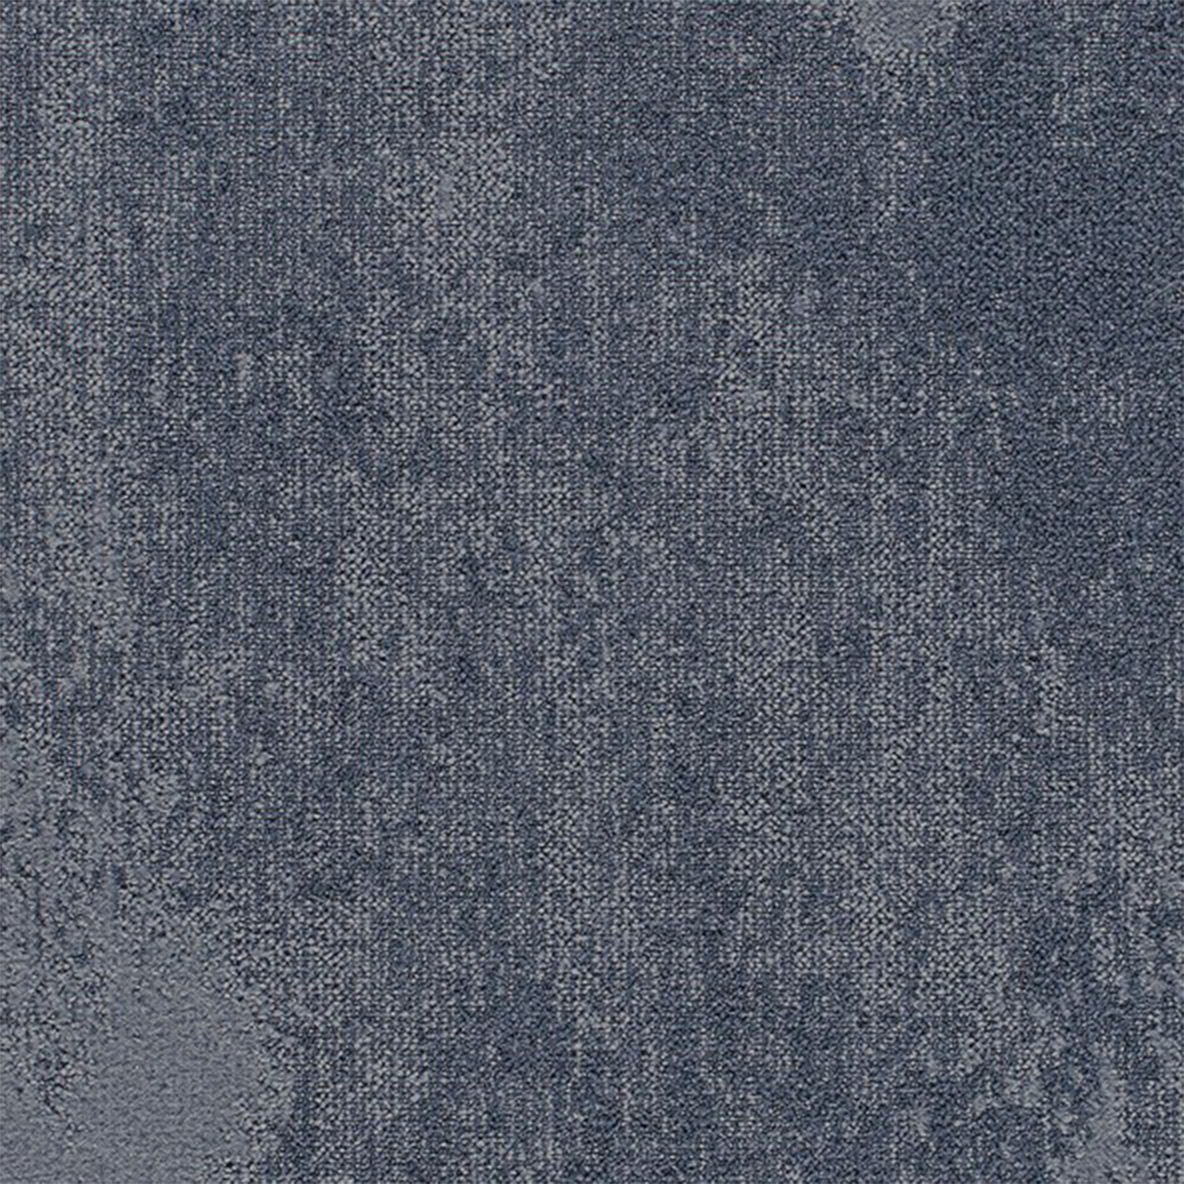 Static Commercial Carpet Tile .33 Inch x 50x50 cm per Tile Blueprint color close up